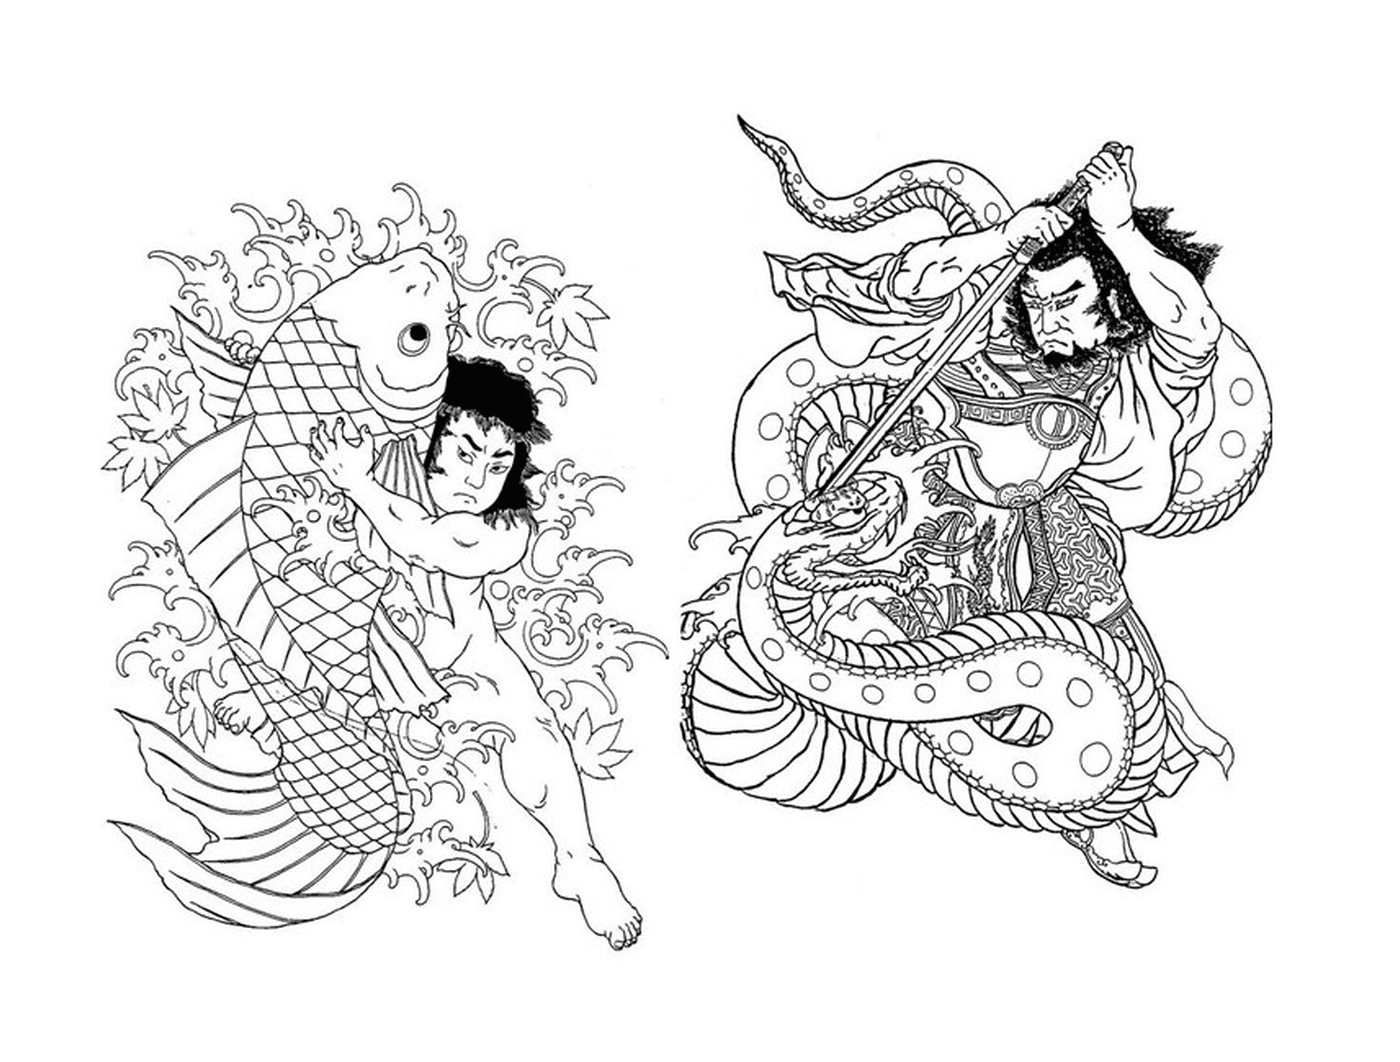  Zwei asiatische Zeichnungen einer Frau und eines Mannes 